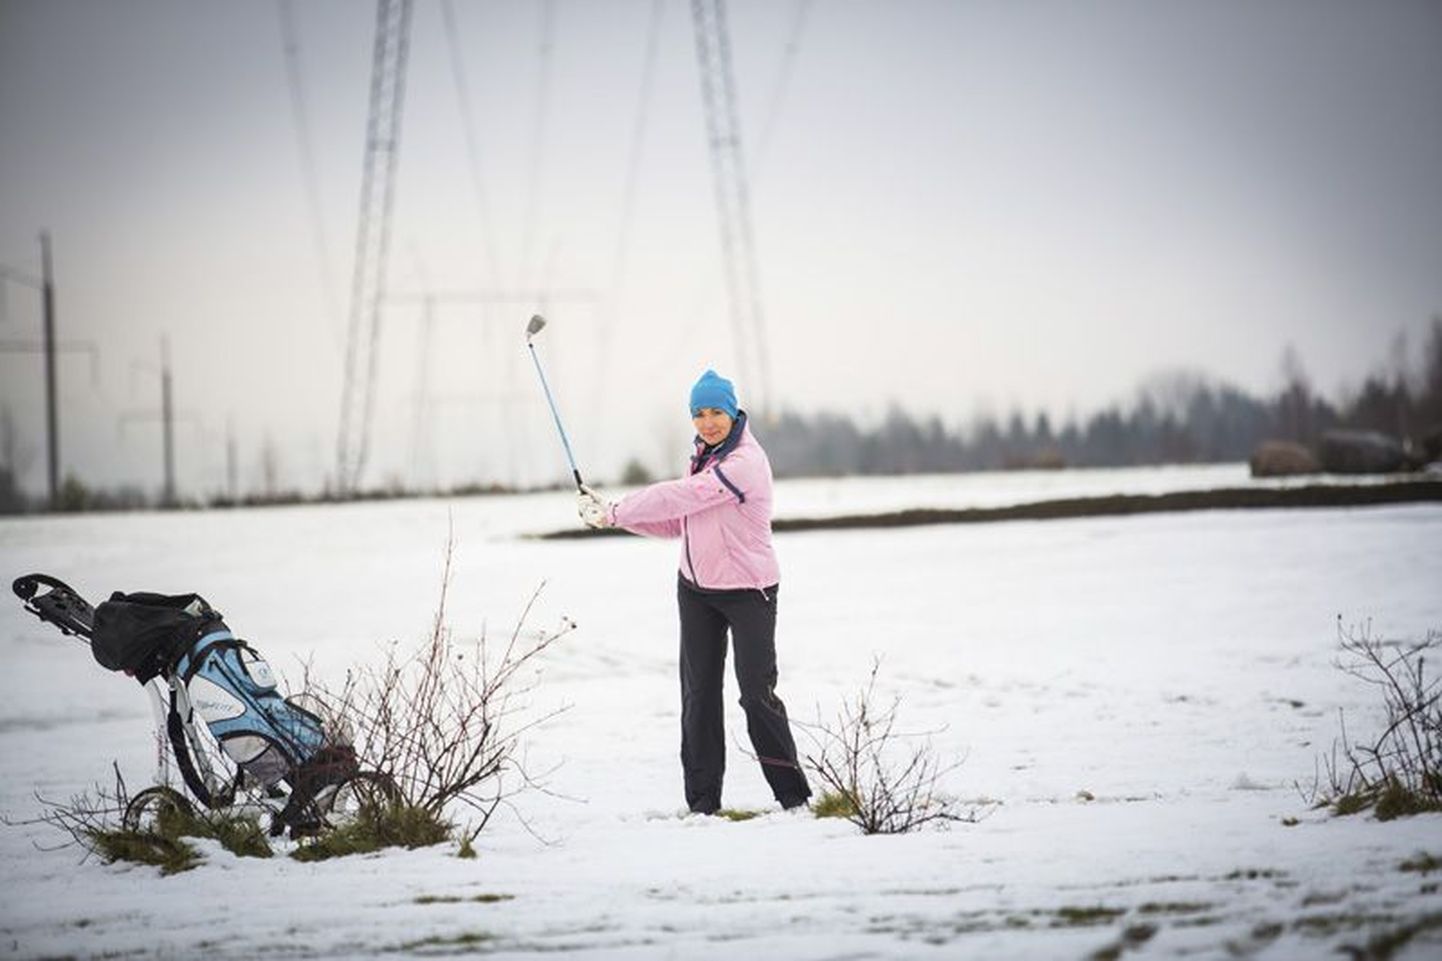 Õpetaja Kaie Kenderi koolipäevad venivad nii pikaks, et lemmiktegevuseks - golfi mängimiseks - jagub tema kurvastuseks aega liiga vähe. Viiekordne maakonna meister golfis on nii tarmukas, et on nõus ka kesk lund palle lööma.